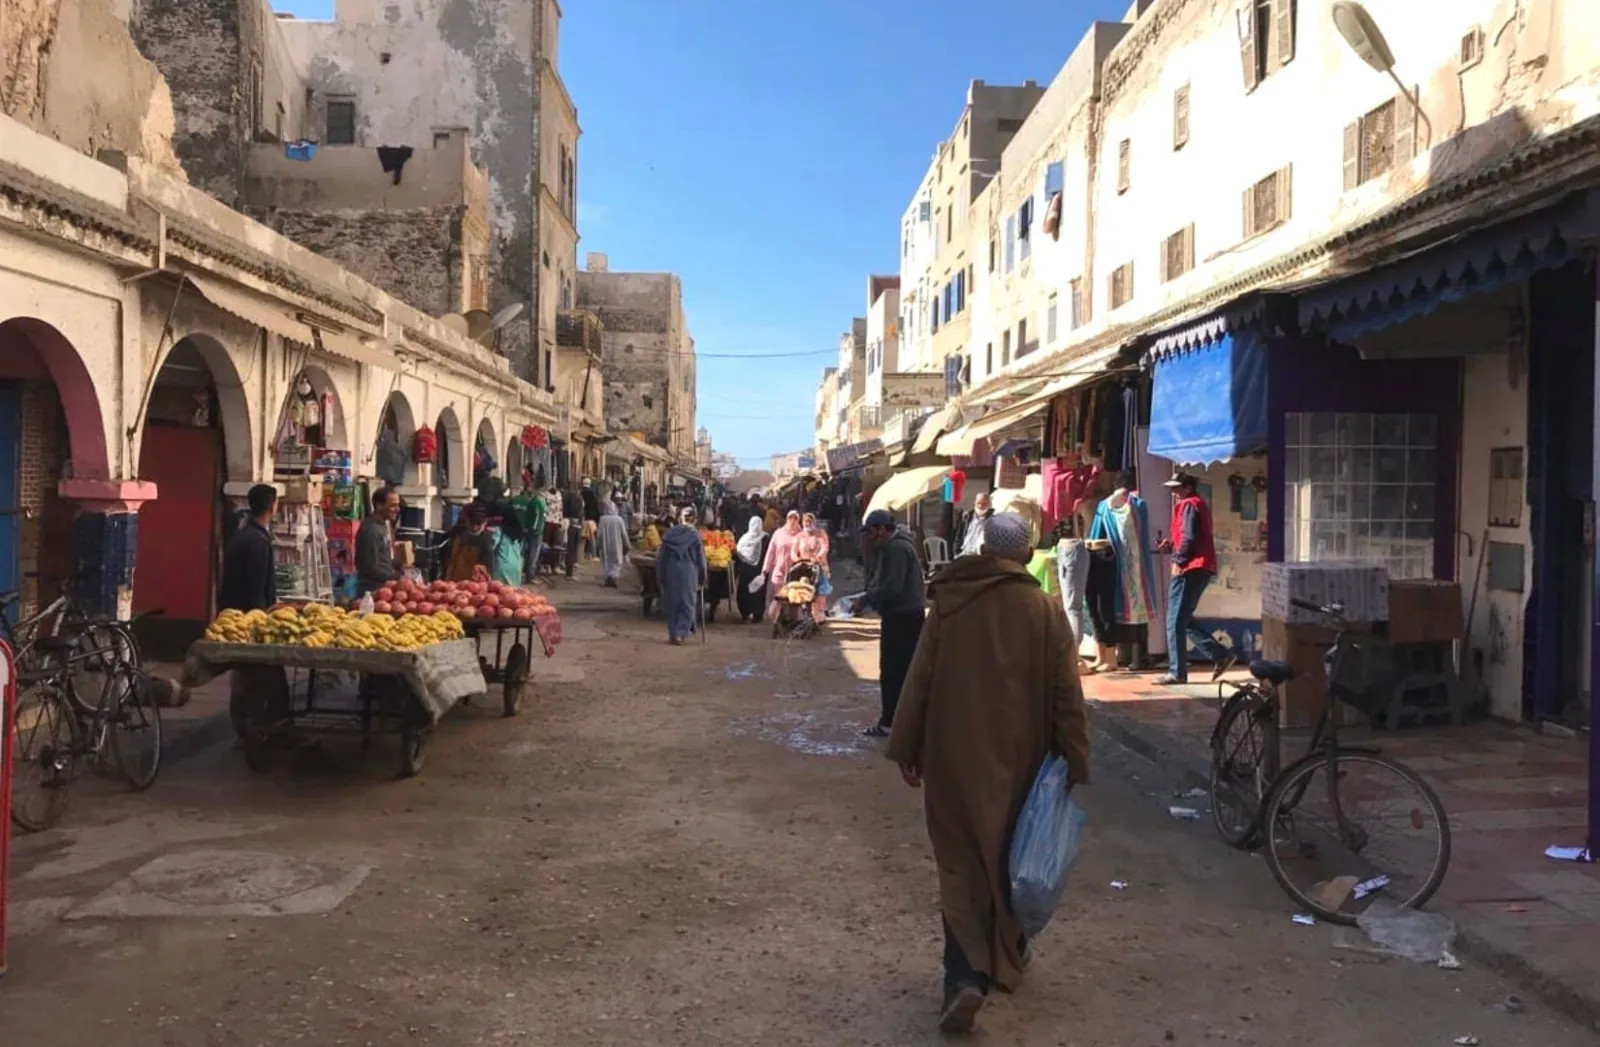 Afrika, ein Kontinent als Beute: Marokko, ein Armenhaus von der EU produziert